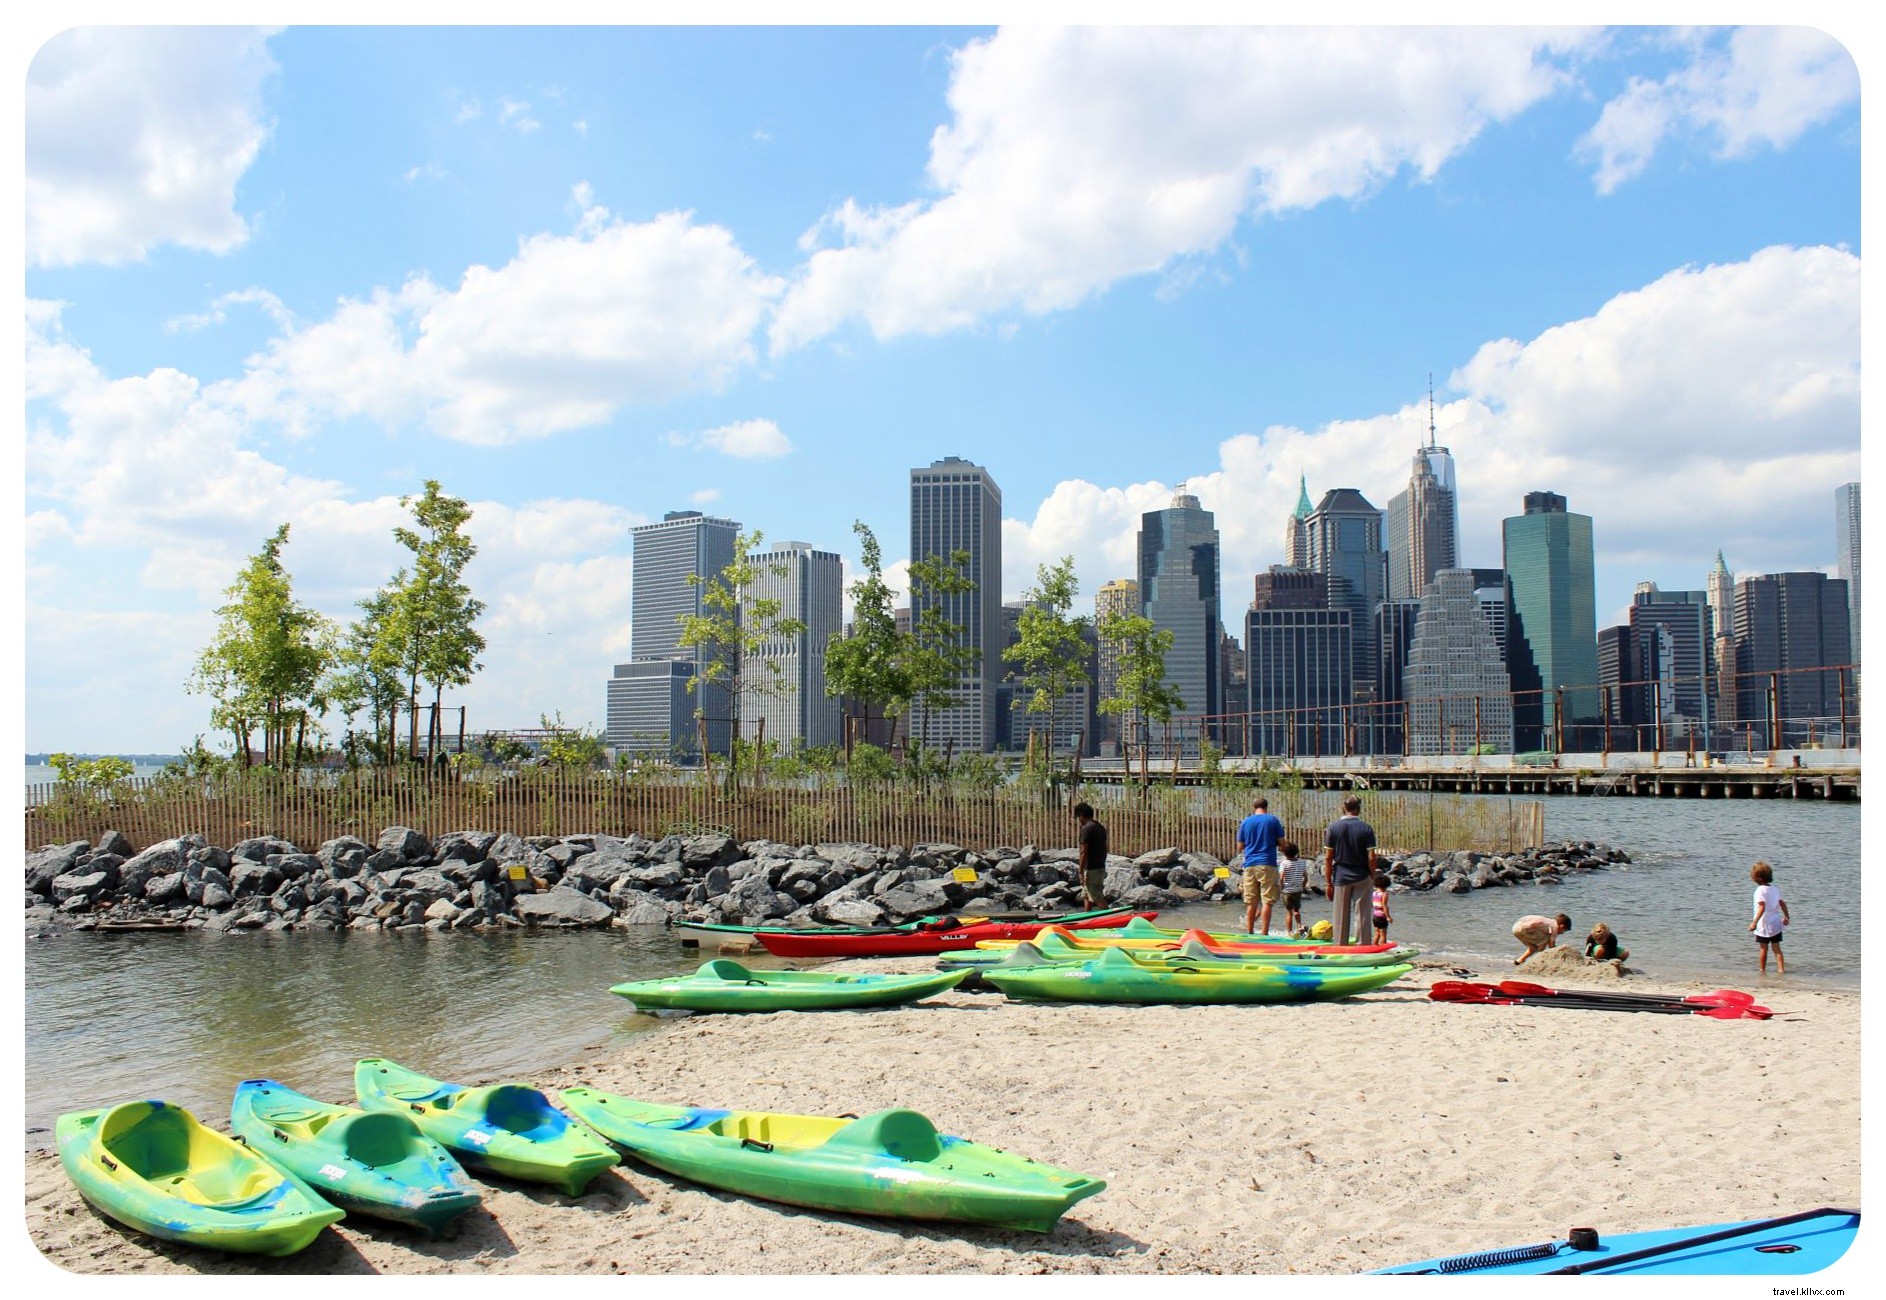 28 hal yang dapat dilakukan di New York City pada musim panas